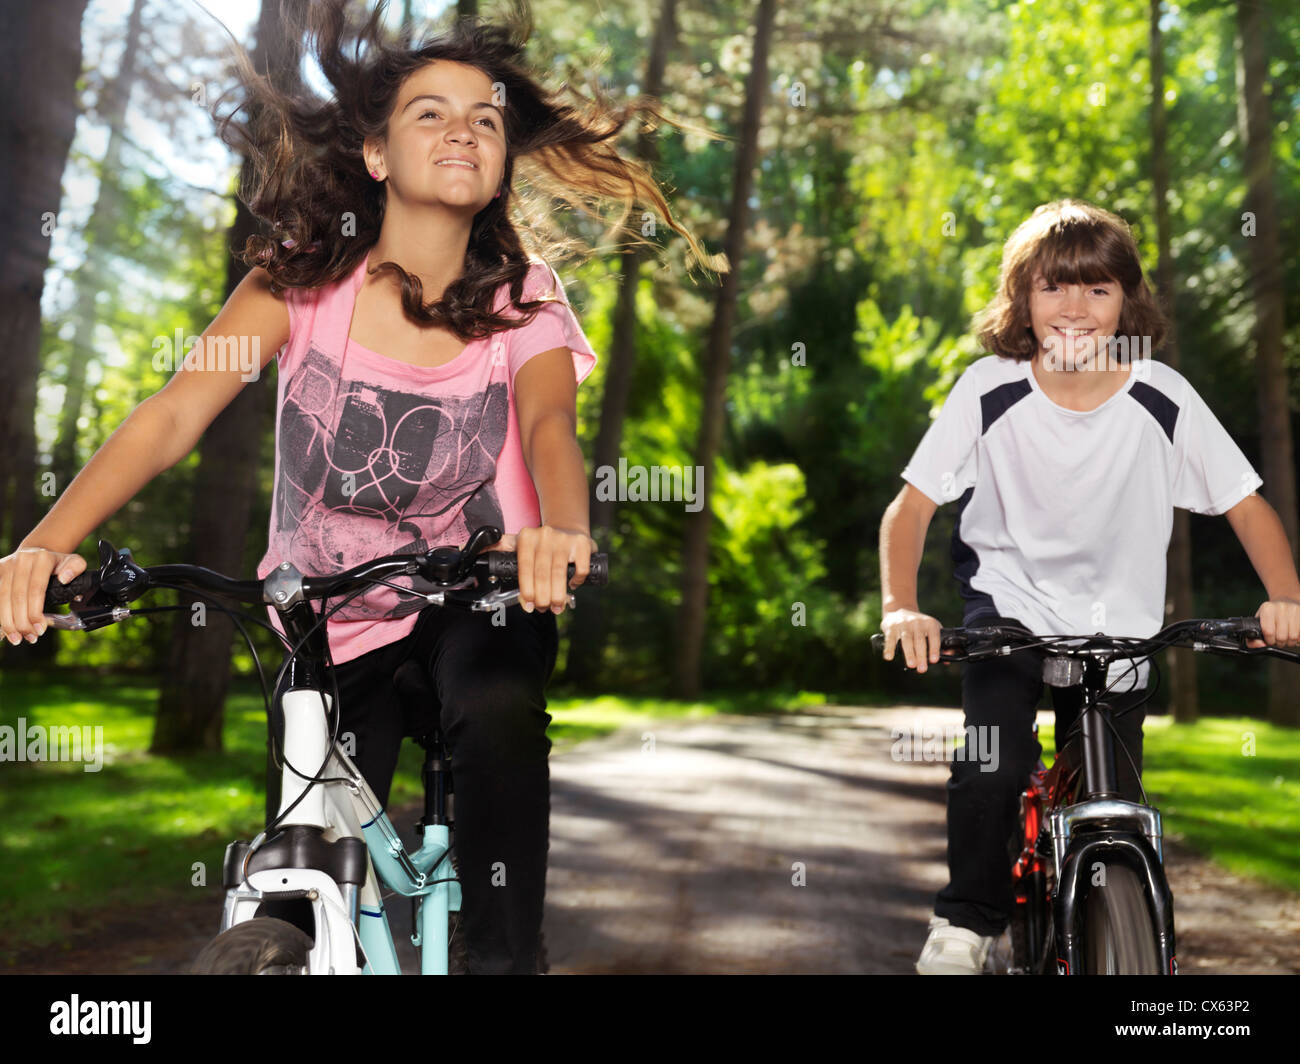 Deux happy smiling children enjoying balade à vélo dans un parc, frère et sœur, 10 et 13. L'été actif à l'extérieur de vie. Banque D'Images